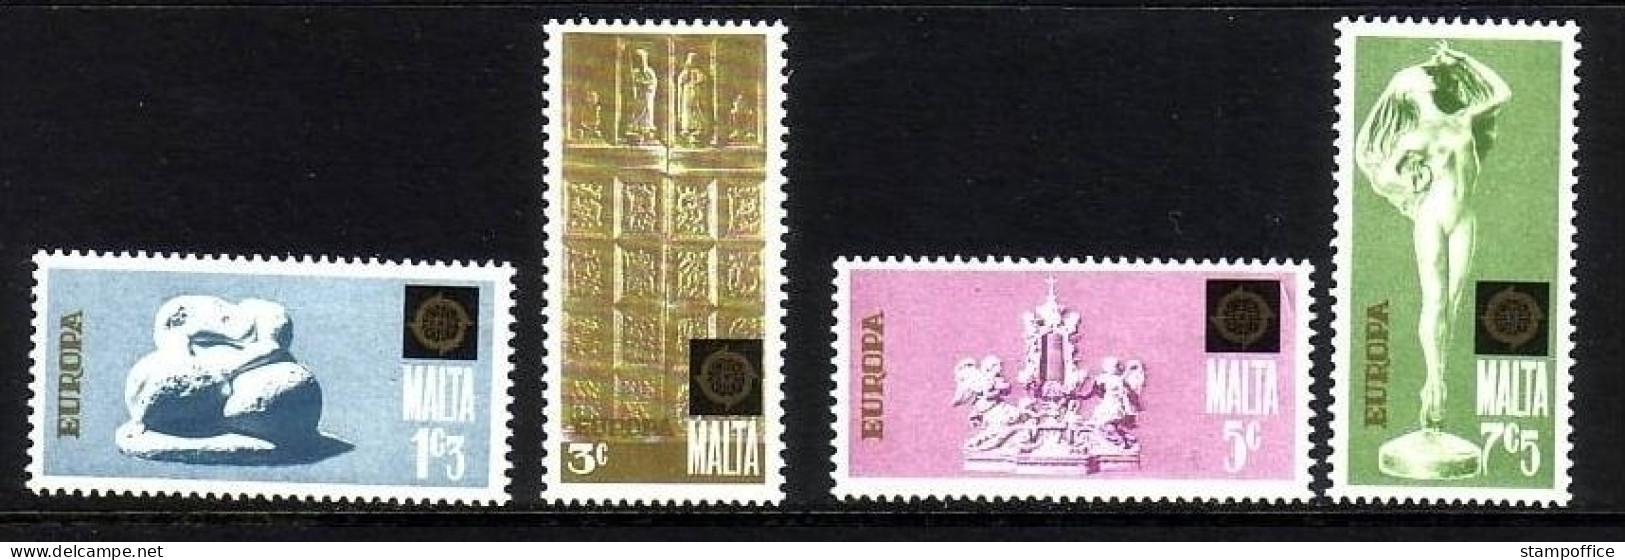 MALTA MI-NR. 493-496 POSTFRISCH(MINT) EUROPA 1974 - SKULPTUREN - 1974